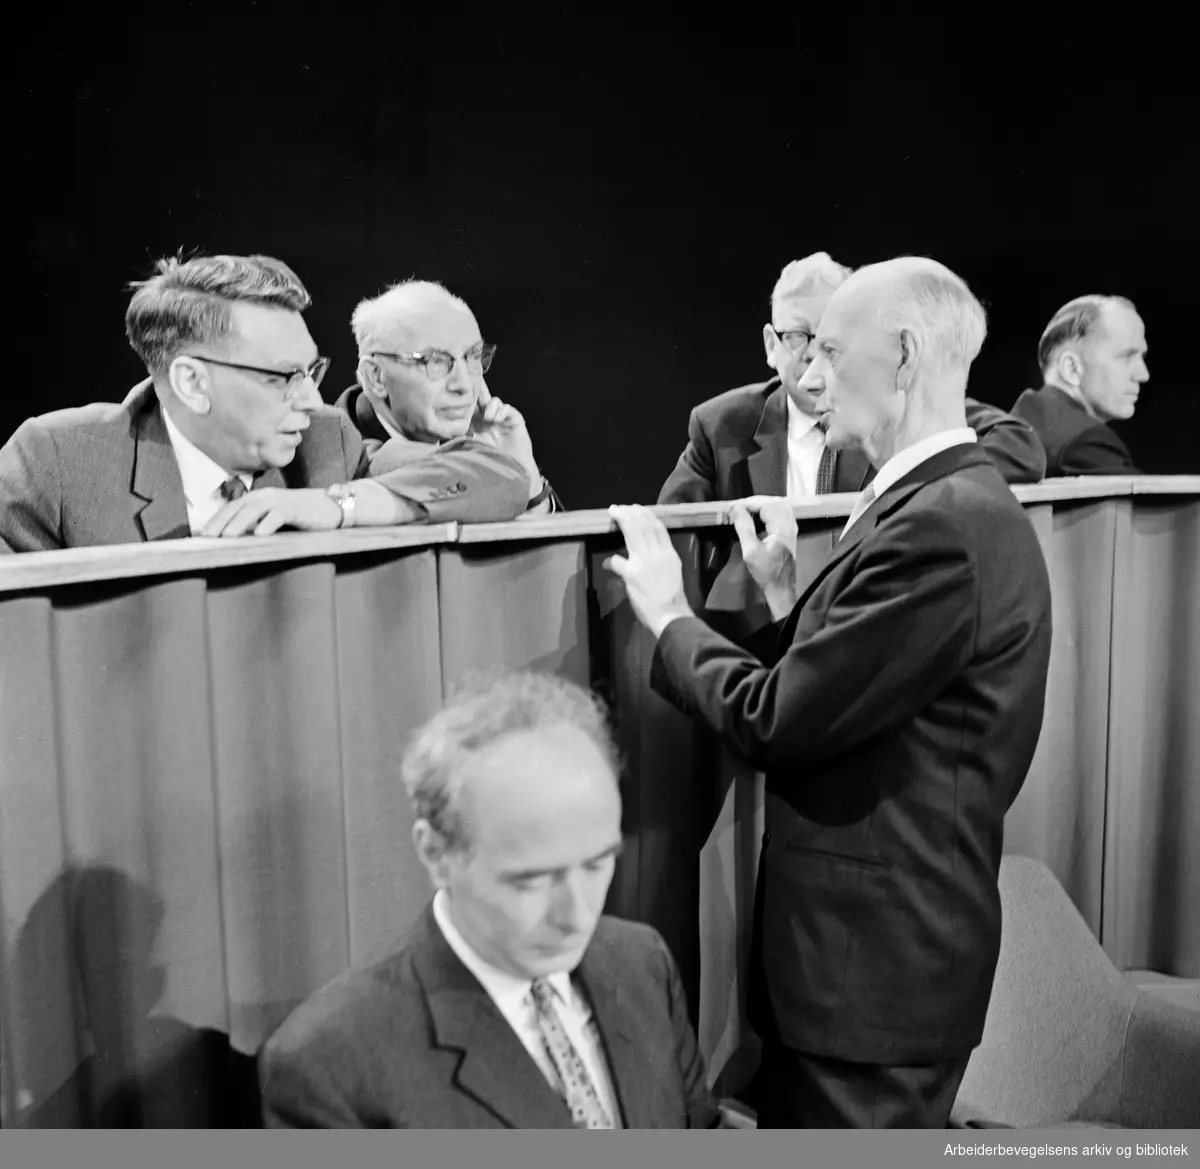 Valgdebatt i NRK - TV. Statsminister Einar Gerhardsen konfererer sine sekretærer Olav Brunvand, Olaf Solumsmoen og Dagfin Juel. I forgrunnen: Trygve Bratteli. I bakgrunnen til høyre: Lars Korvald. 25 februar 1965.